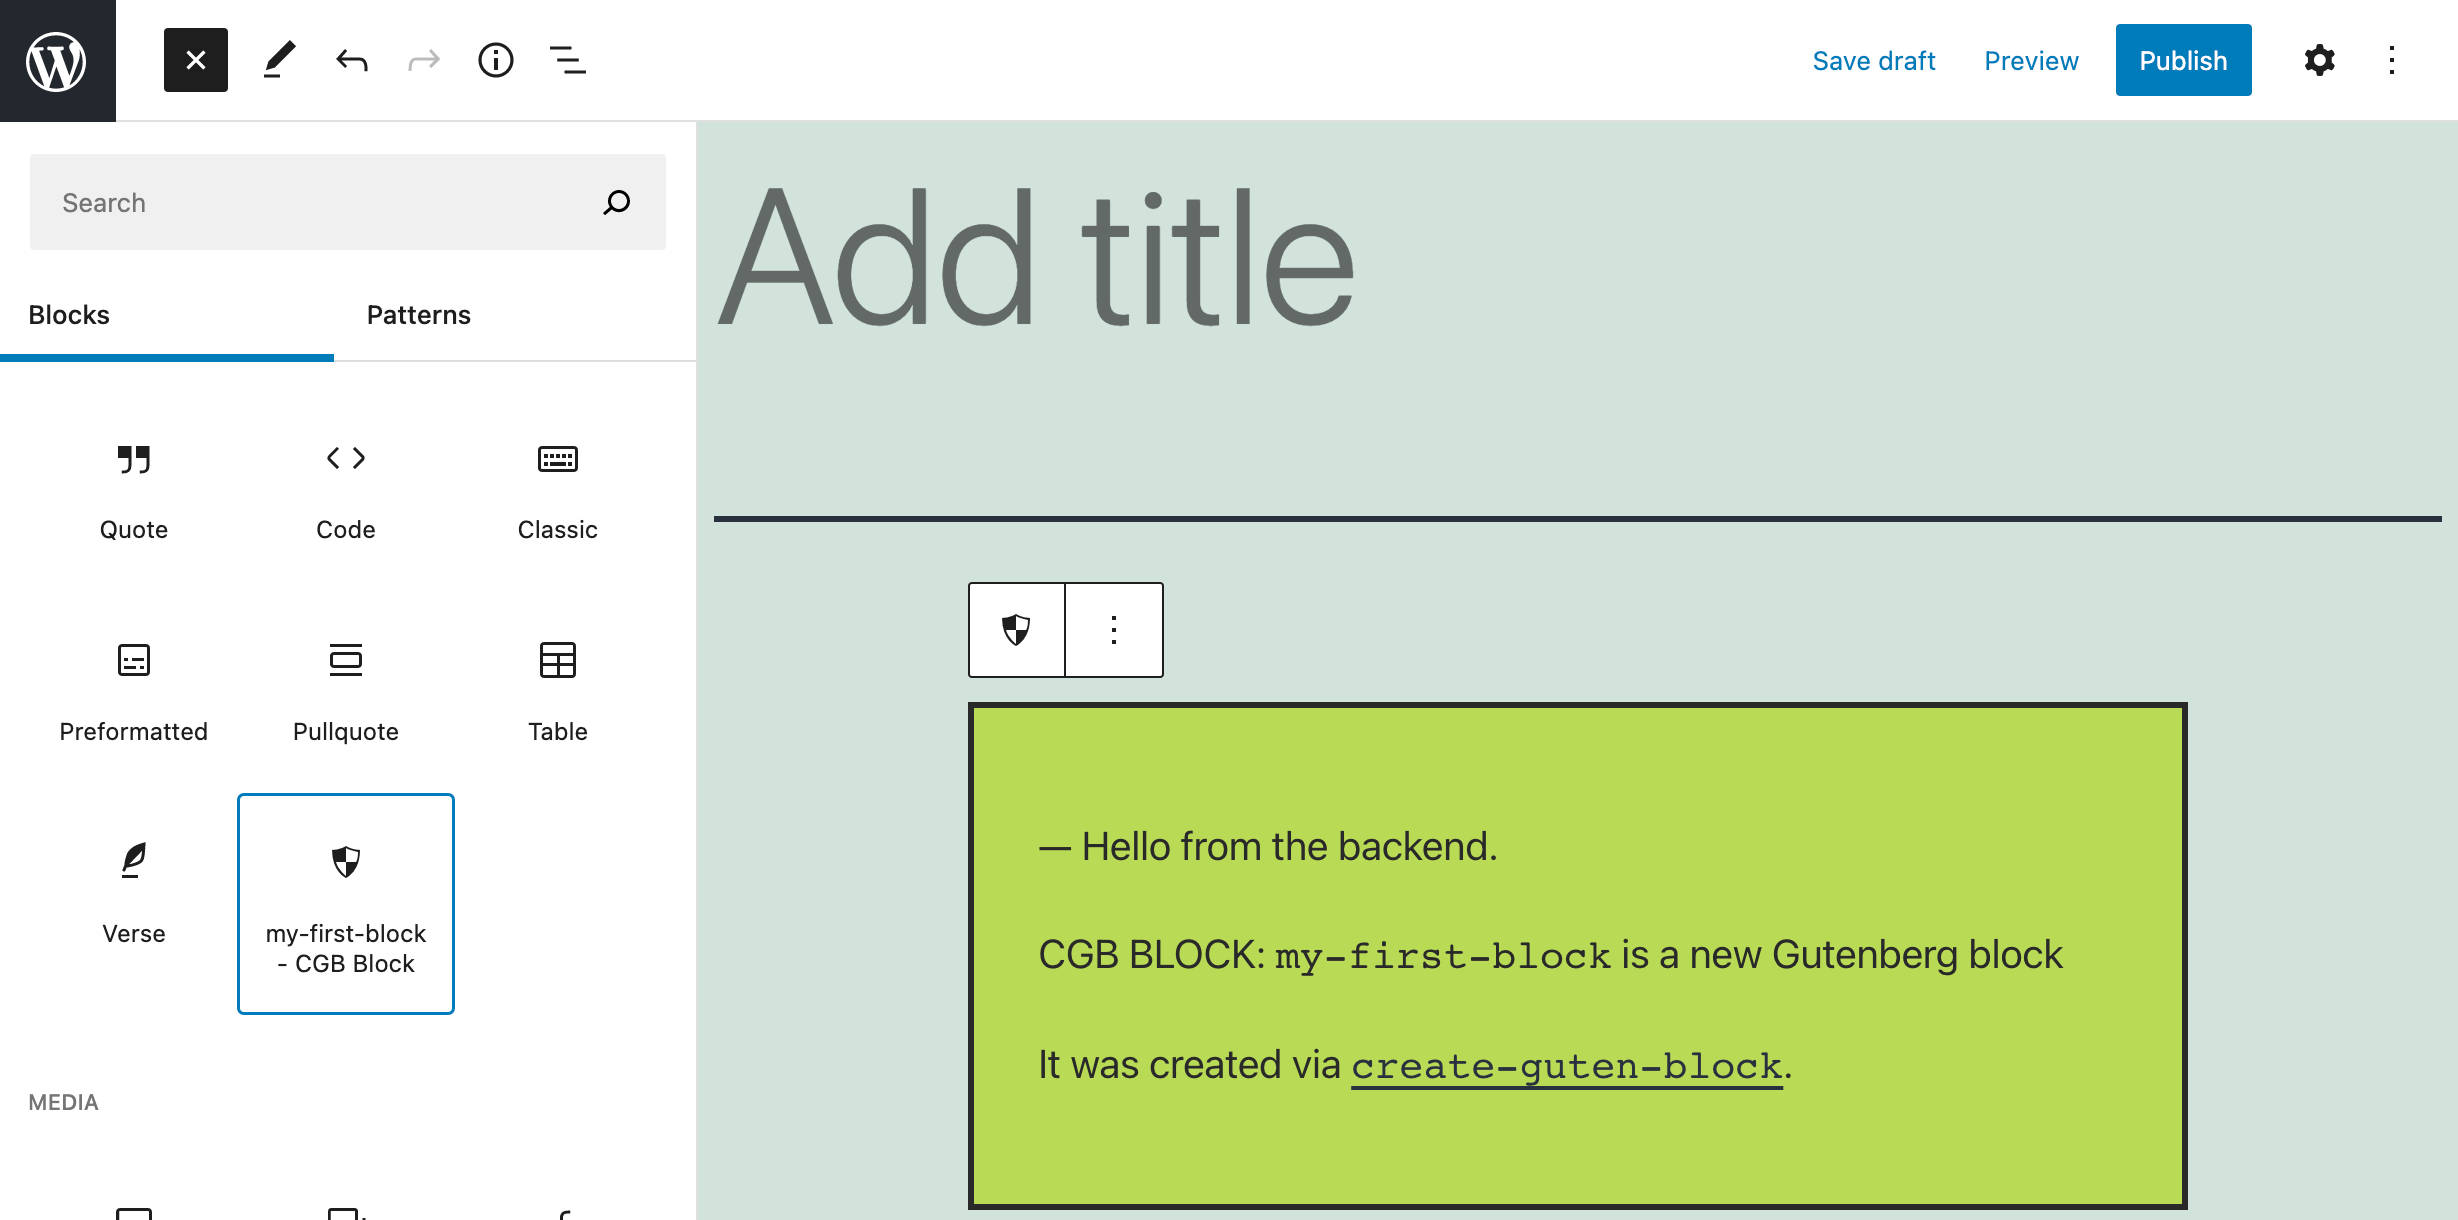 Un nuovo blocco creato con create-guten-block.